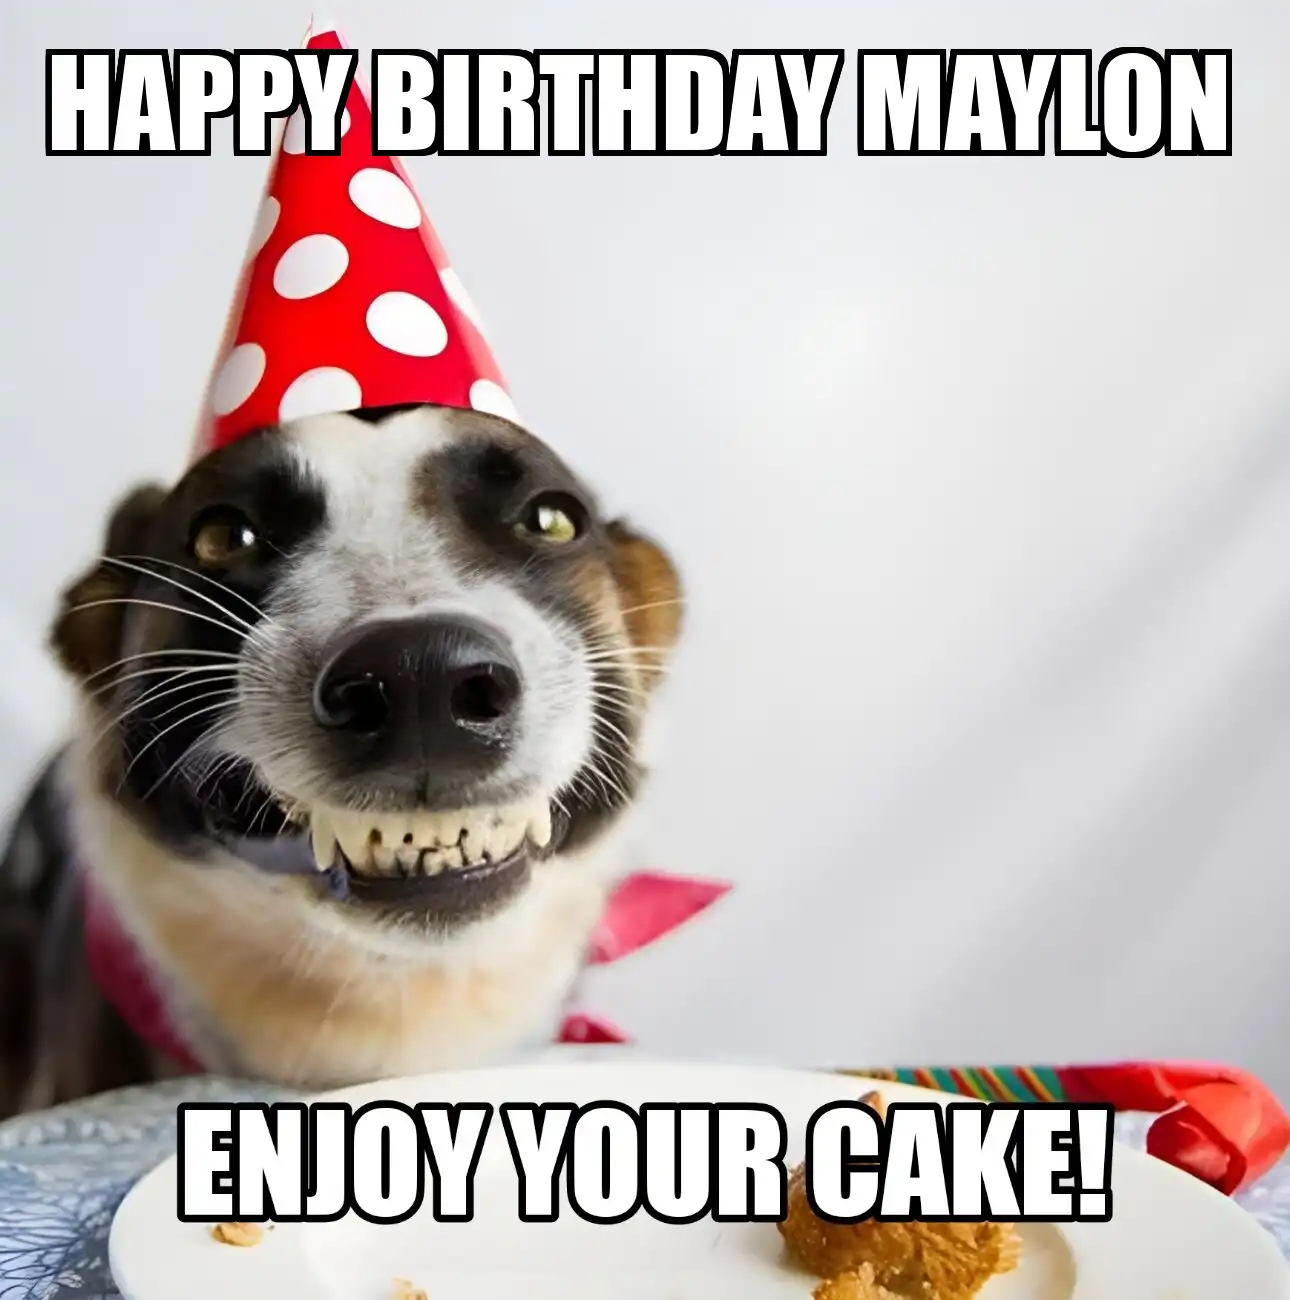 Happy Birthday Maylon Enjoy Your Cake Dog Meme